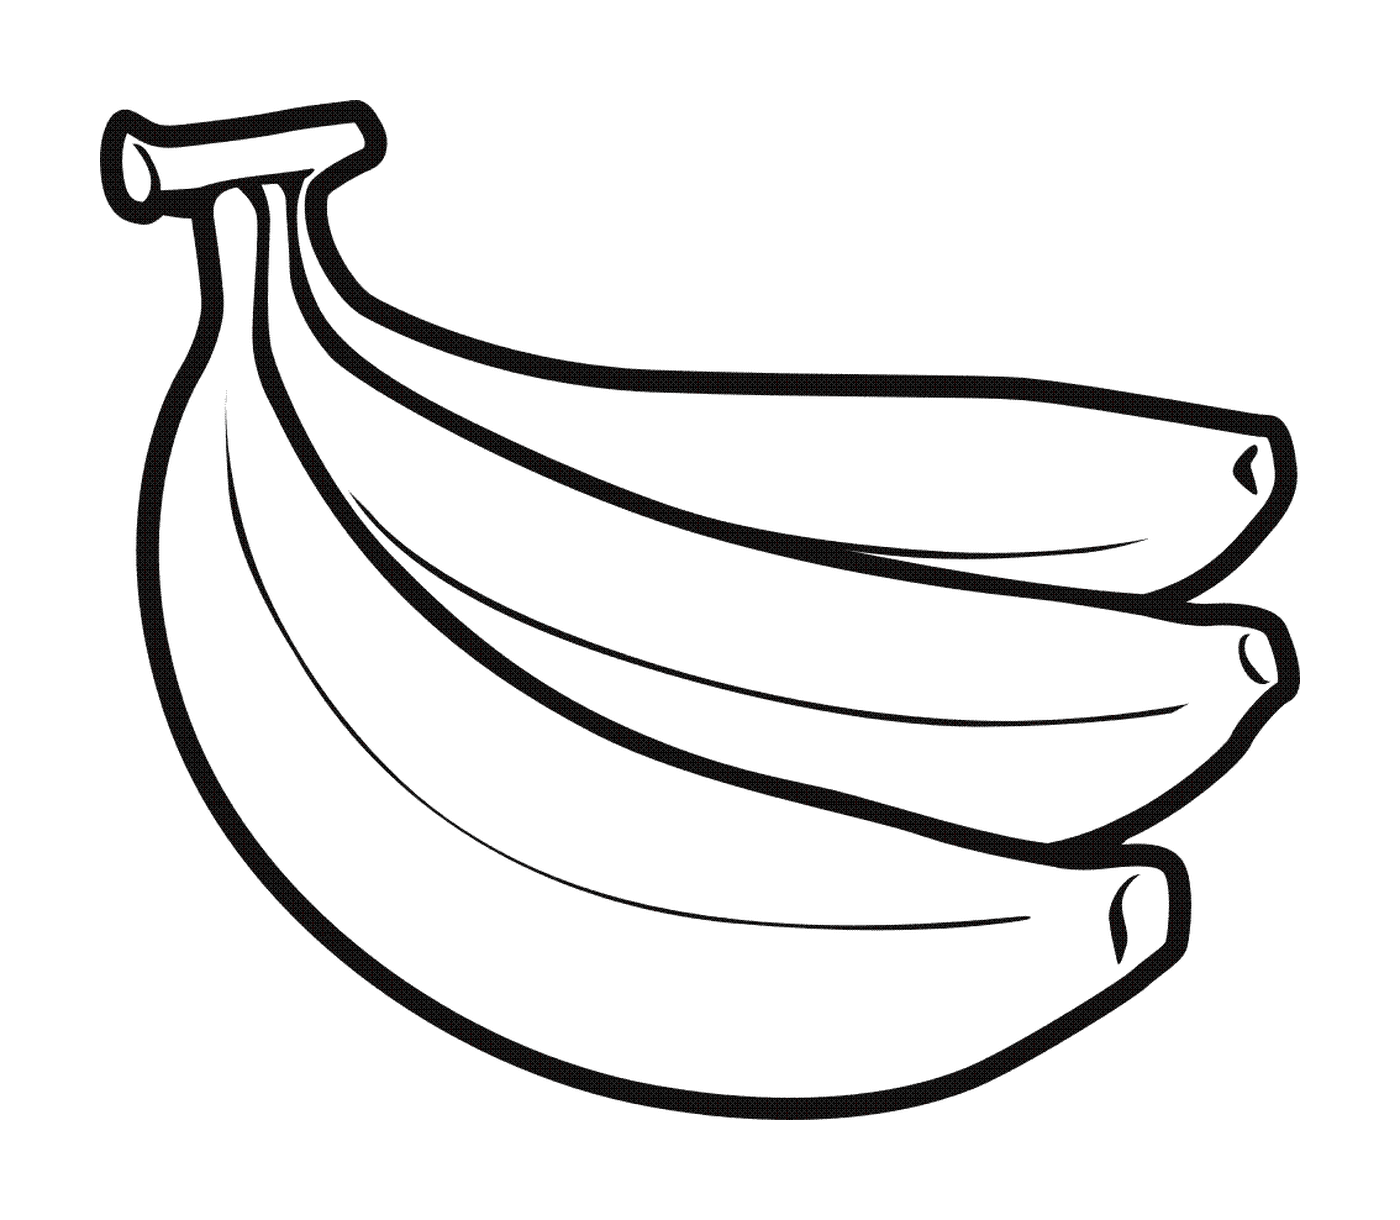   Bananes mûres sur sol 